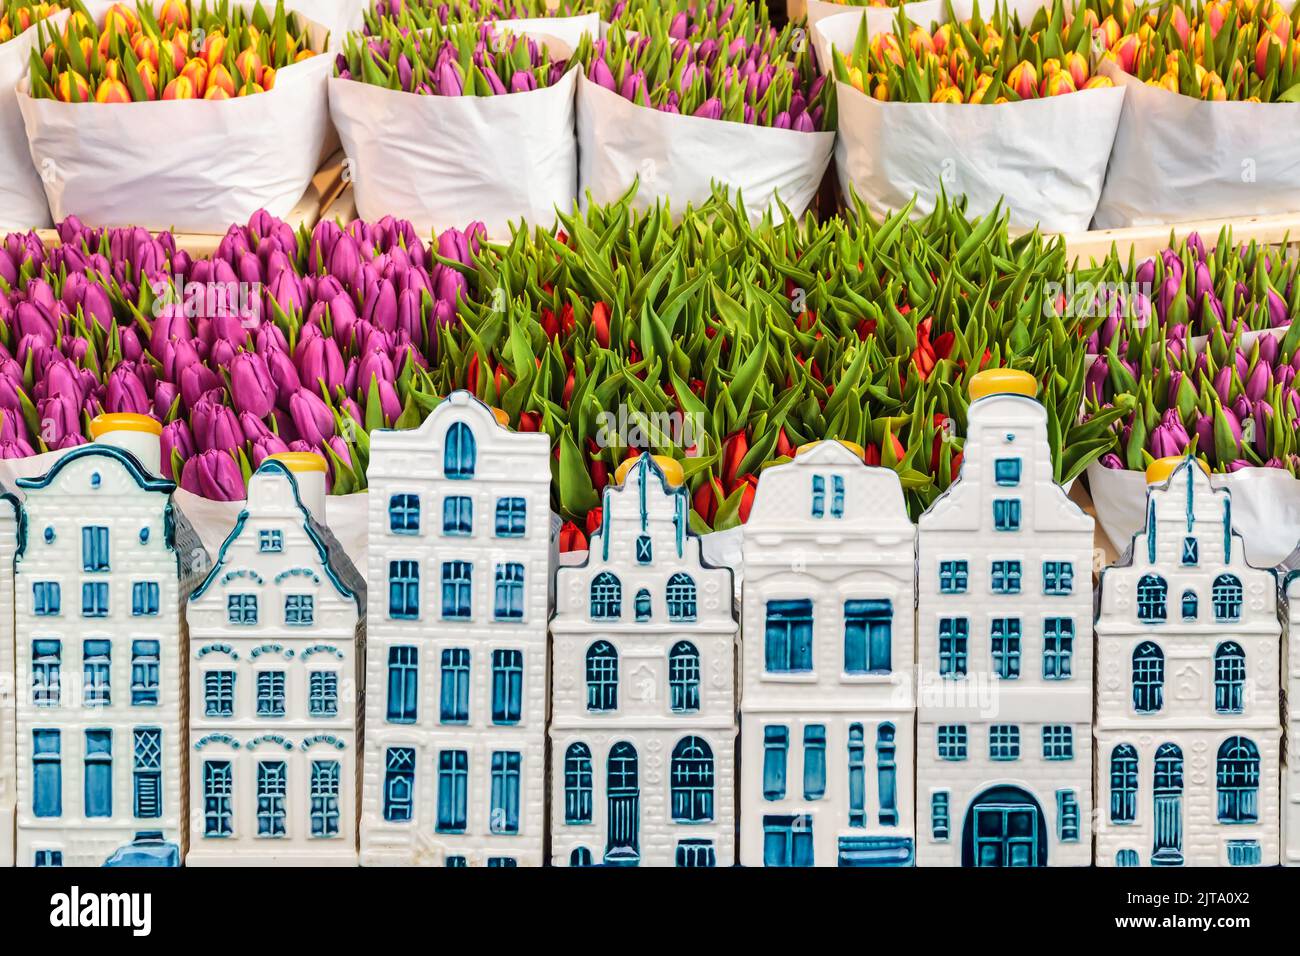 Tulipanes de colores en una tienda de flores con casas de recuerdo en el canal de Ámsterdam en frente Foto de stock